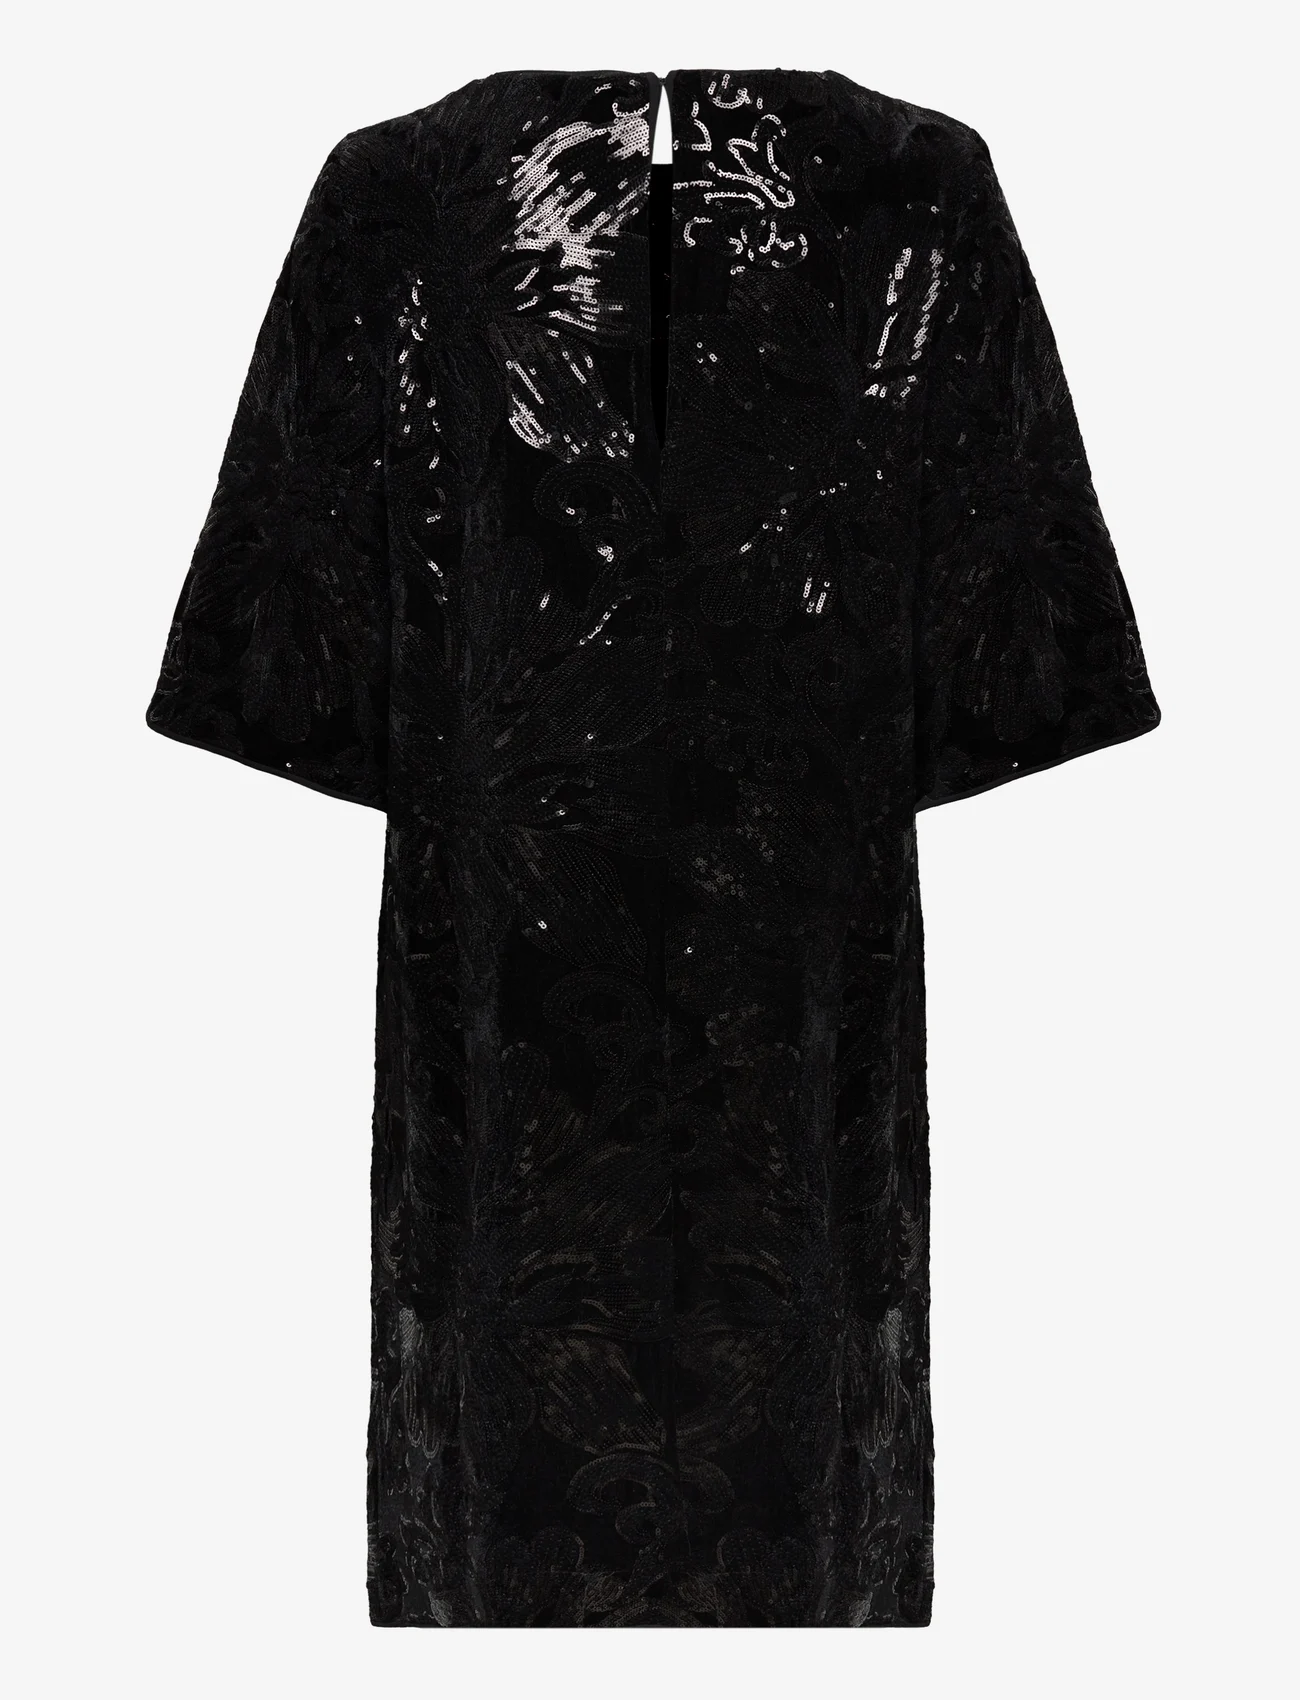 MOS MOSH - MMFanni Flower Dress - odzież imprezowa w cenach outletowych - black - 1